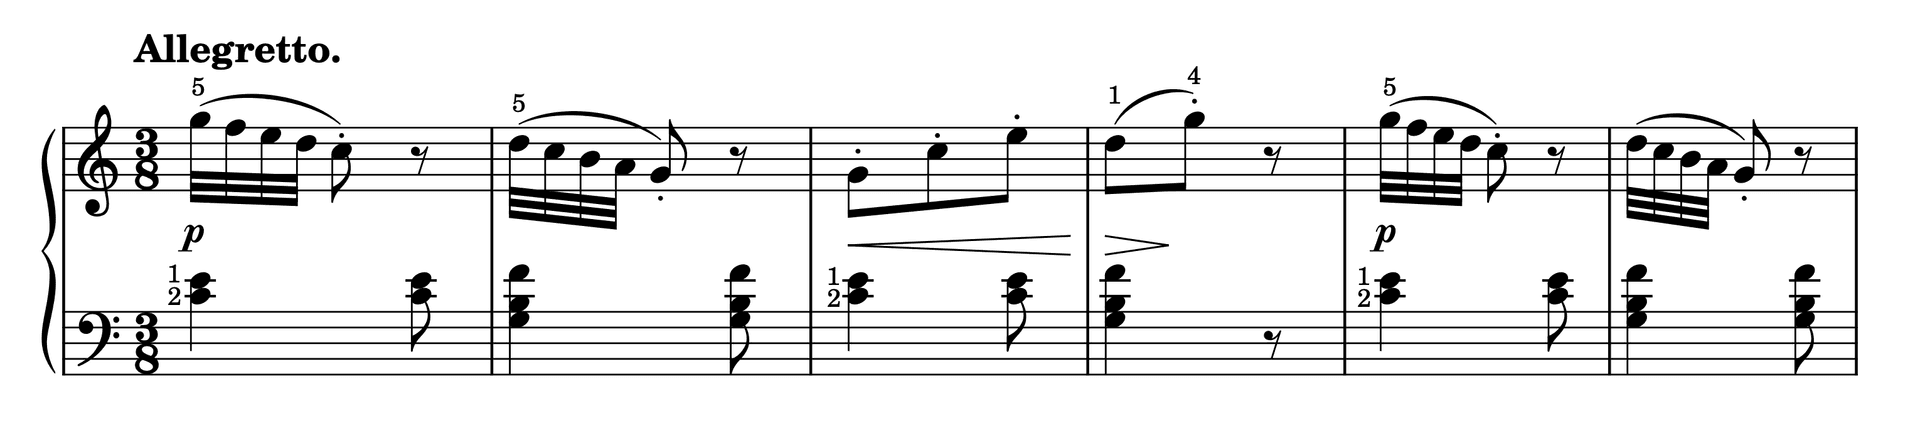 Excerpt of Etude in C Major Op. 37, No. 6